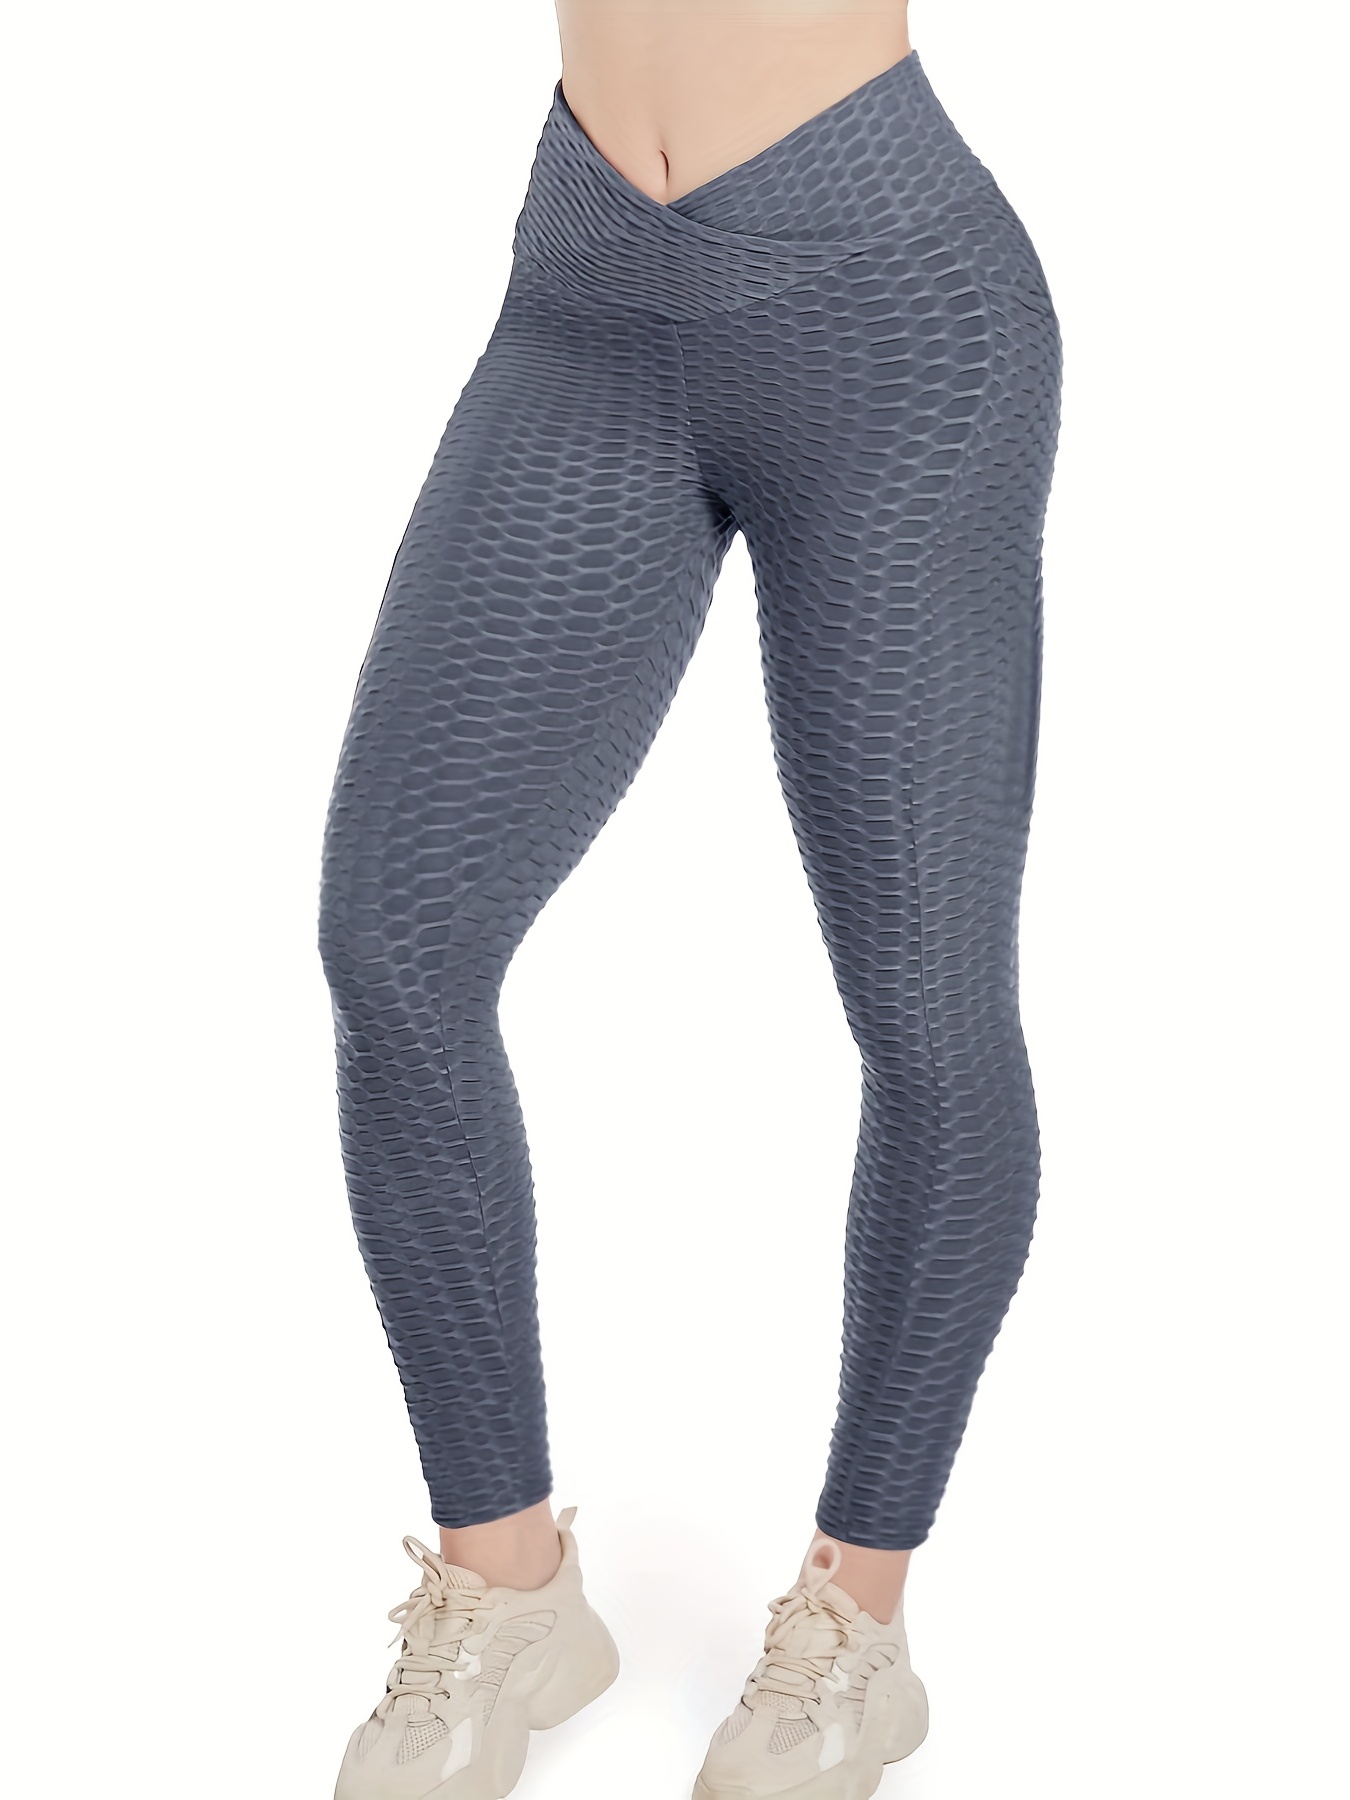  TOROFO Pantalones de yoga de cintura alta para mujer, con  agujeros de metal de roca y piel brillante, patrón de escamas de pescado,  leggings impresos para adelgazar (plata, talla única) 